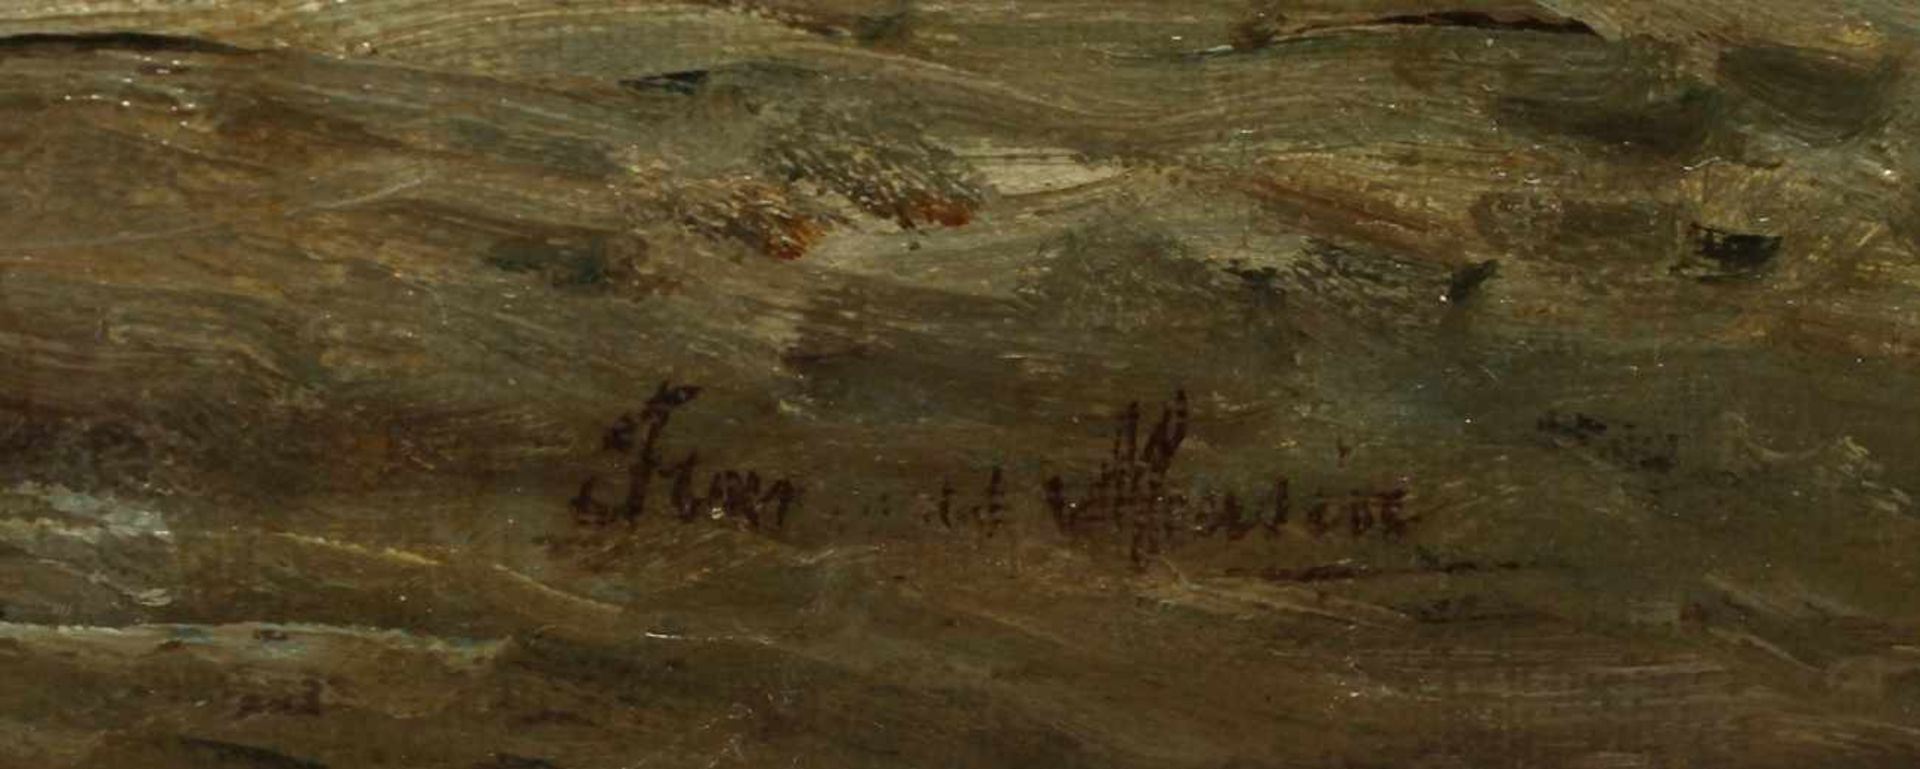 Unleserlich signierender Maler, 1. Hälfte 20. Jh. "Fischerboote auf See", Öl/Lw., 40 x 60cm- - -20. - Bild 2 aus 2